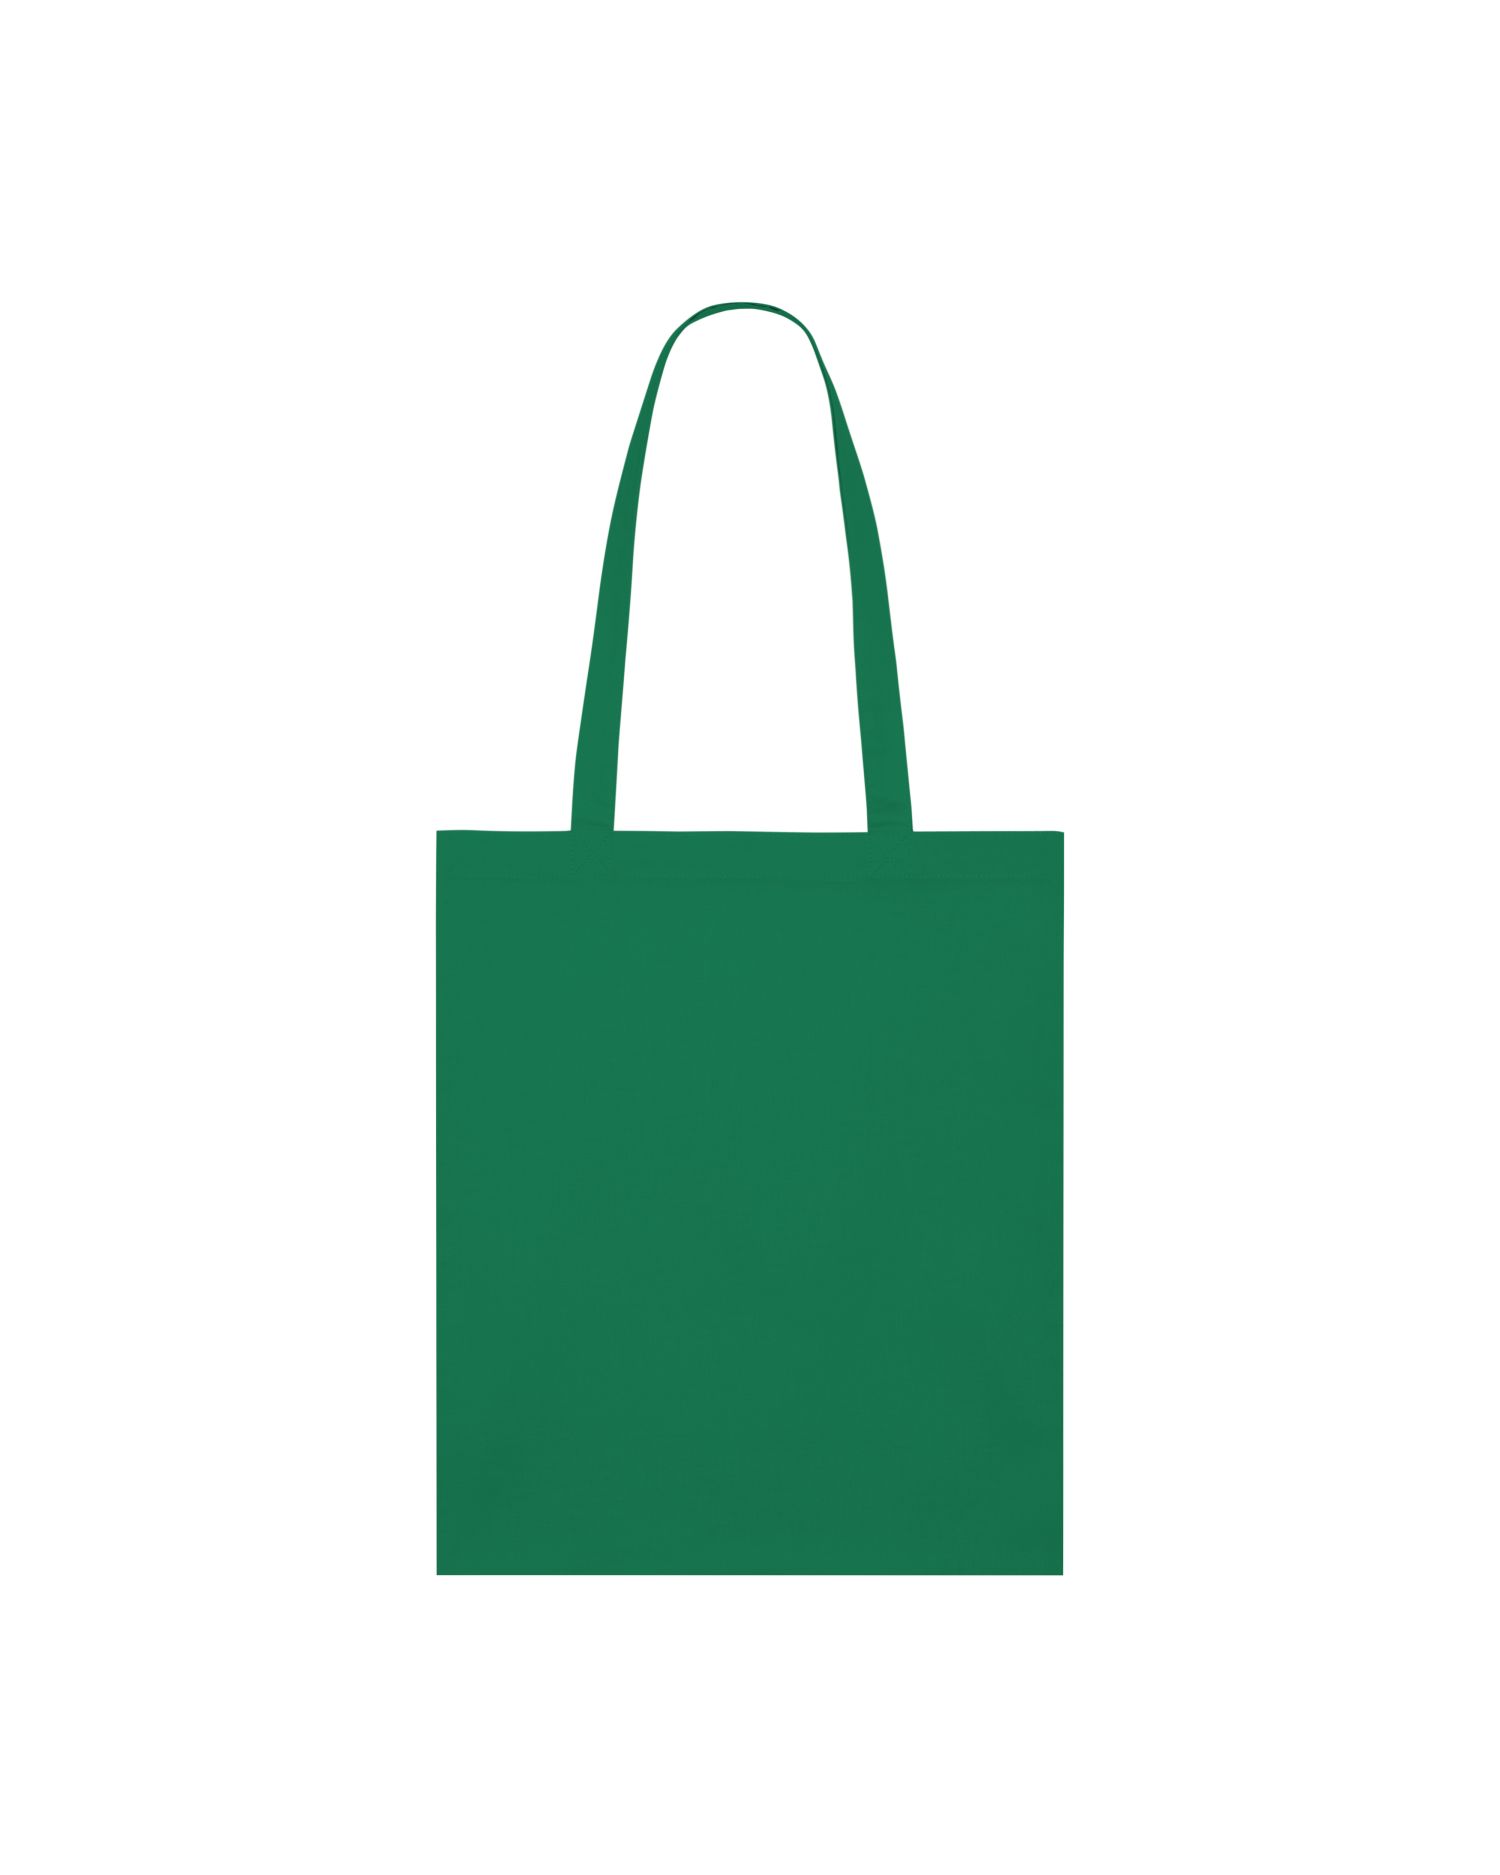  Light Tote Bag in Farbe Varsity Green